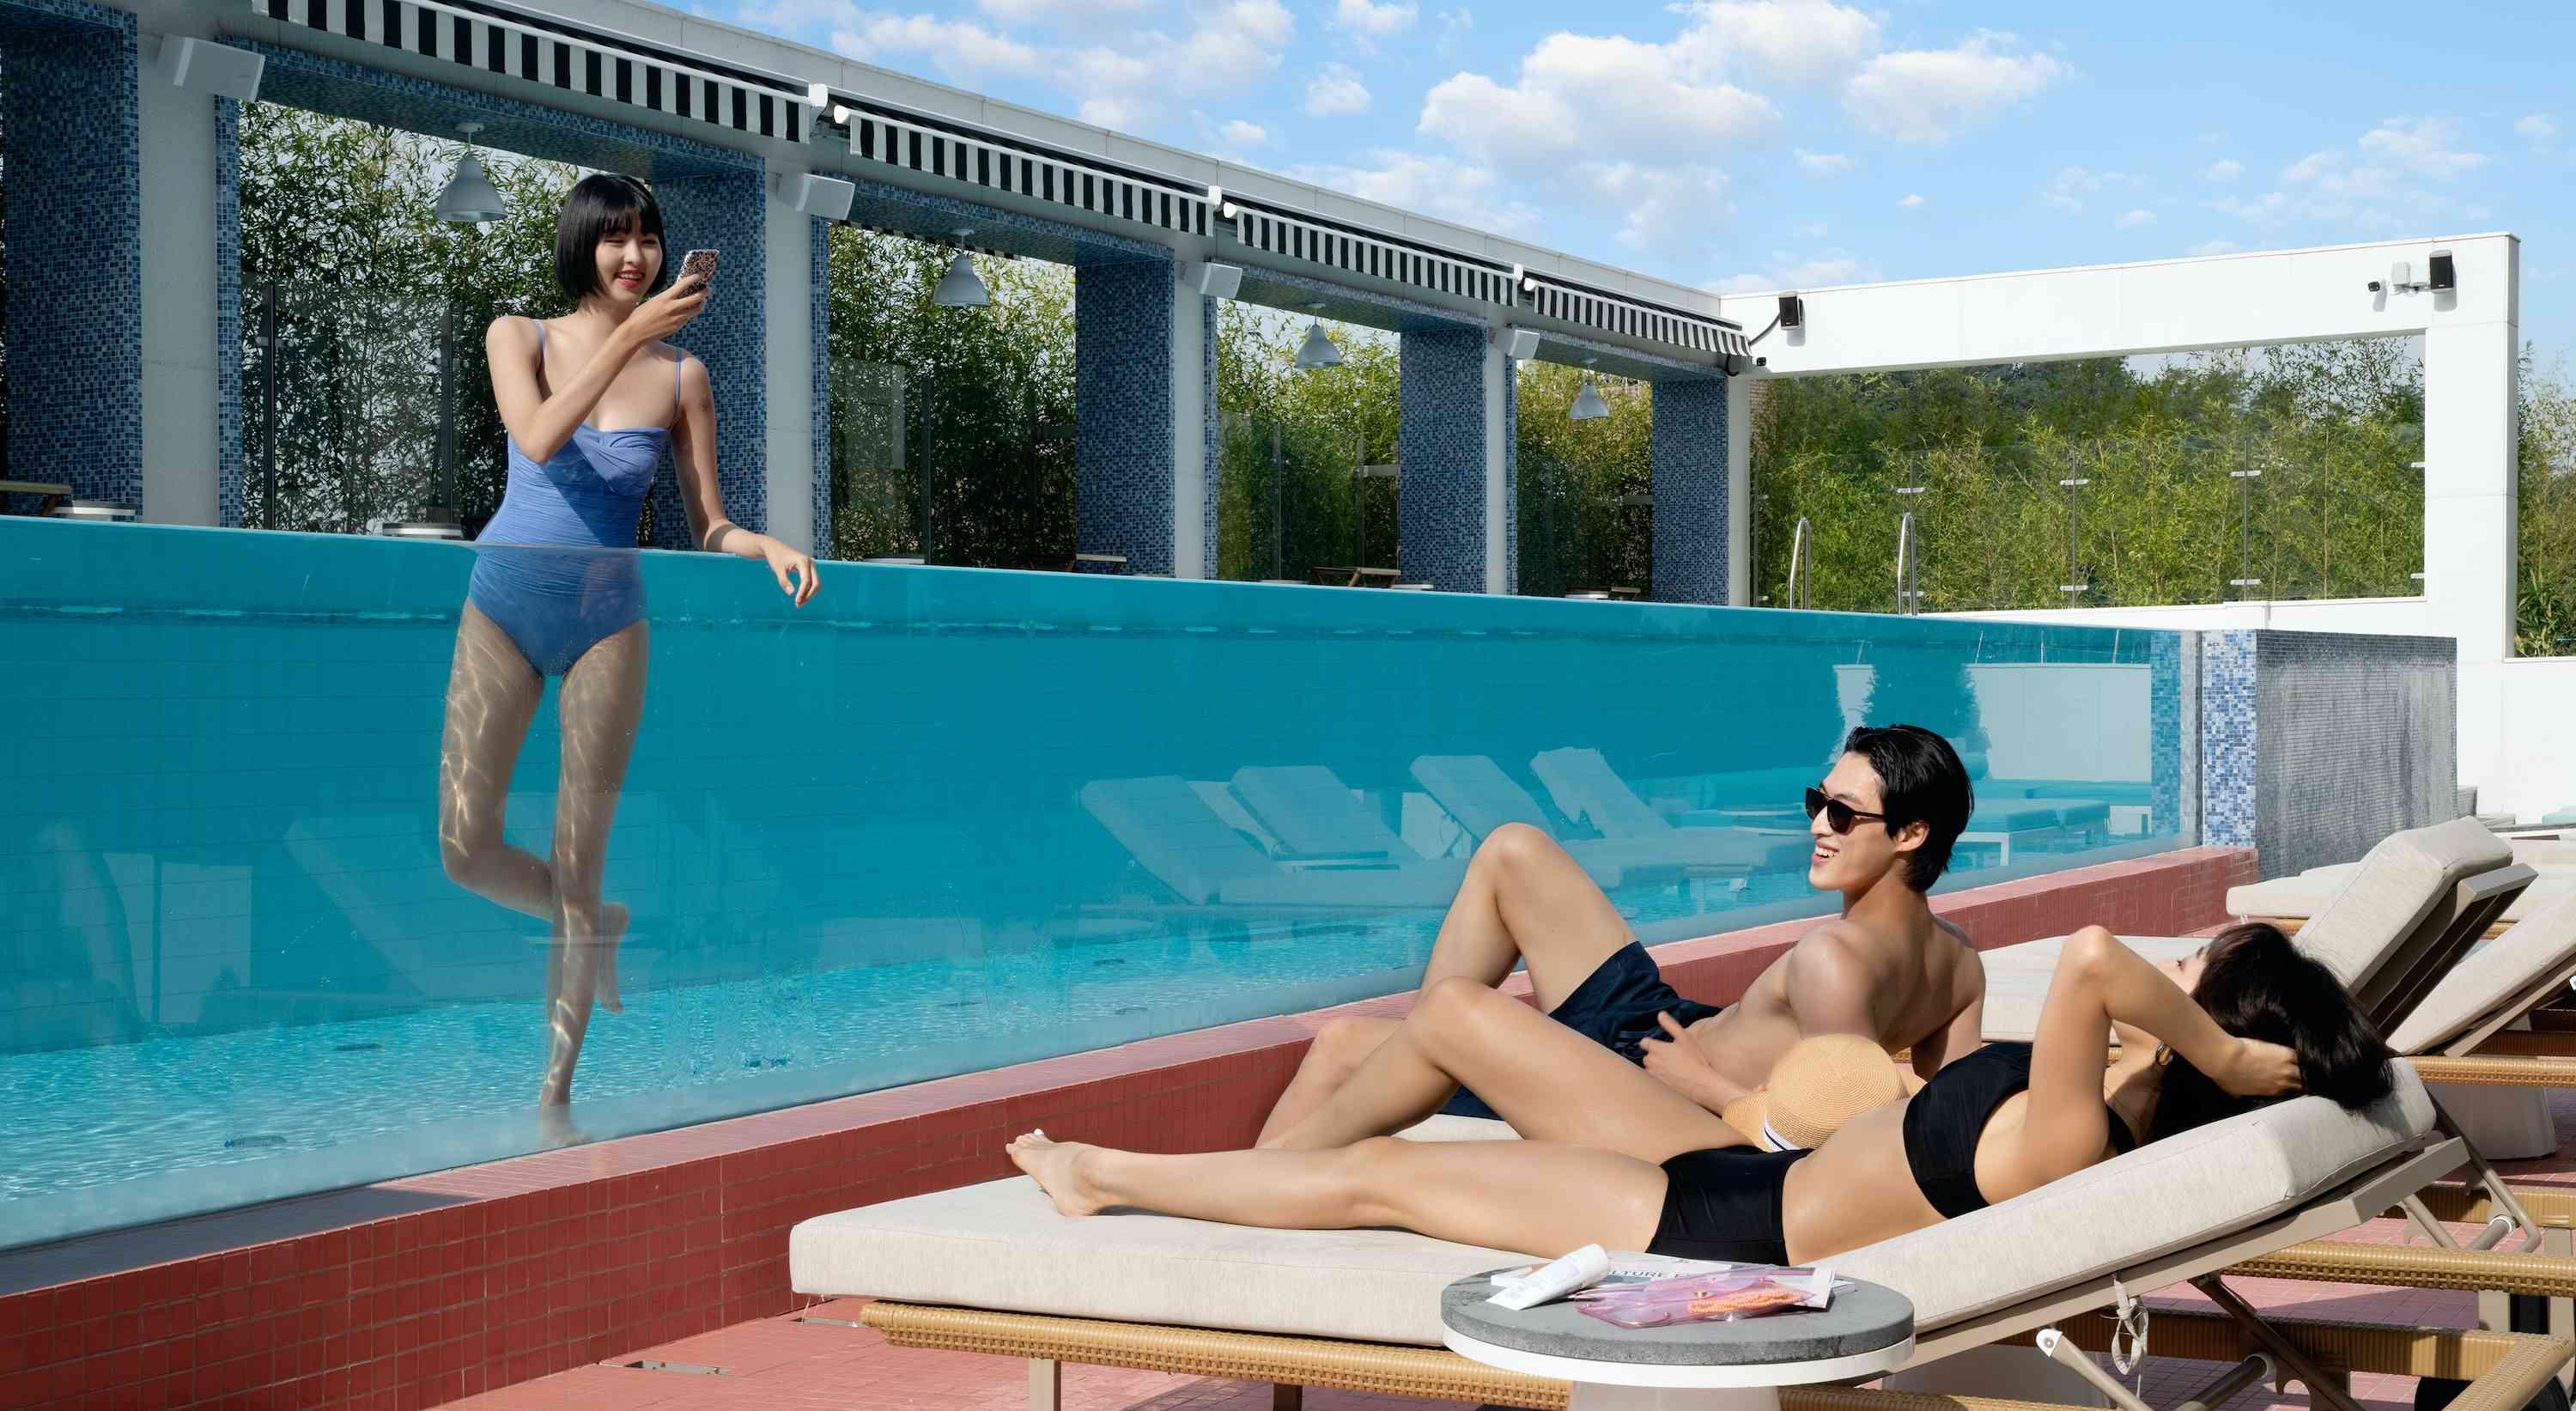 casal nas espreguiçadeiras à beira da piscina com um amigo na piscina